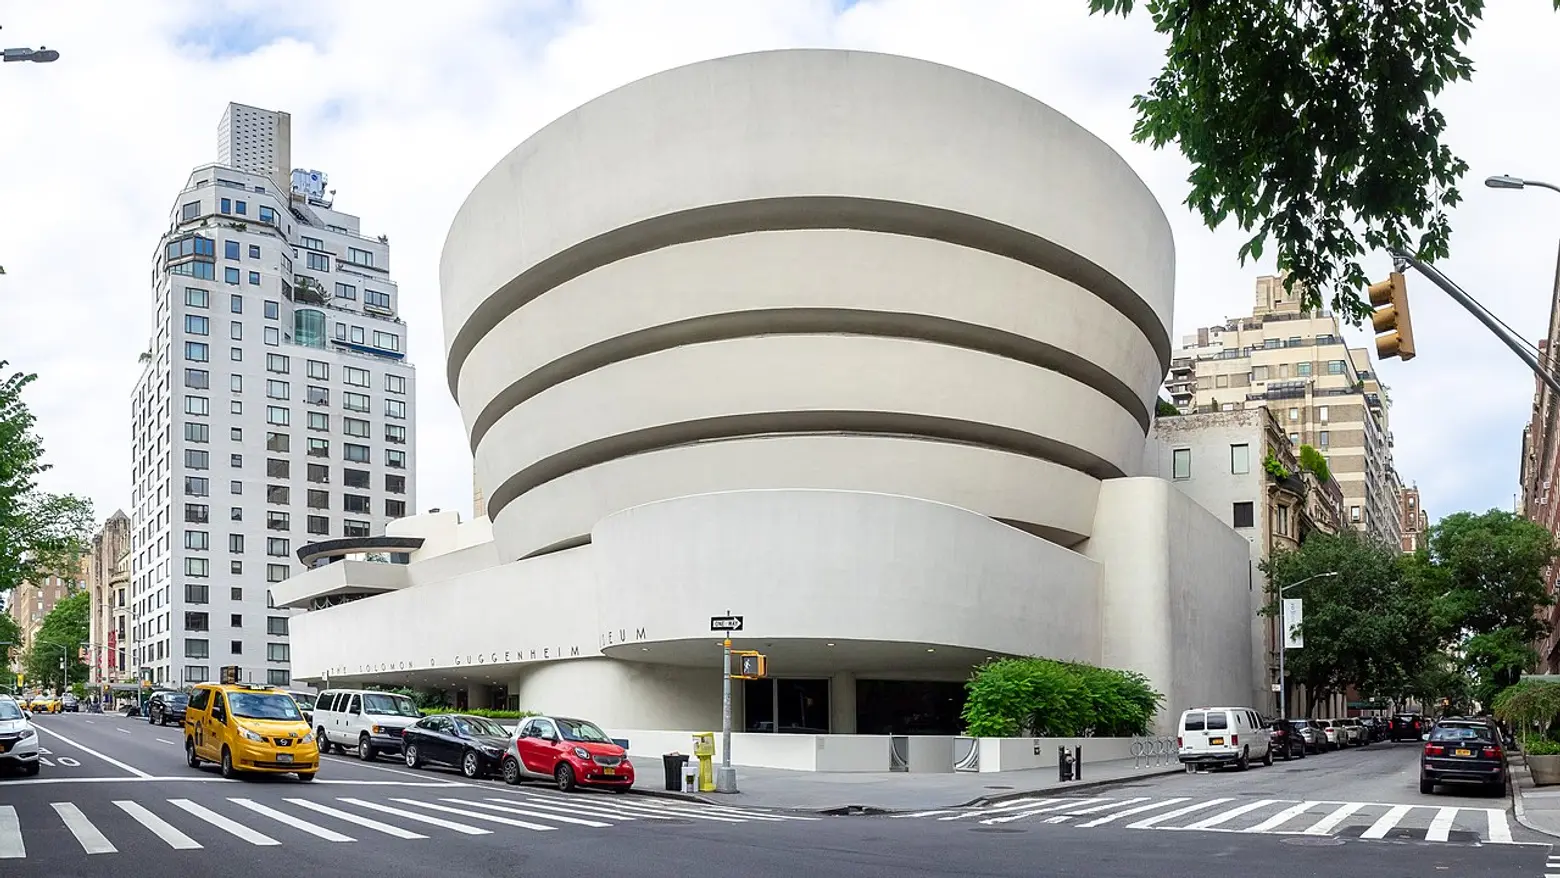 Guggenheim, Frank Lloyd Wright